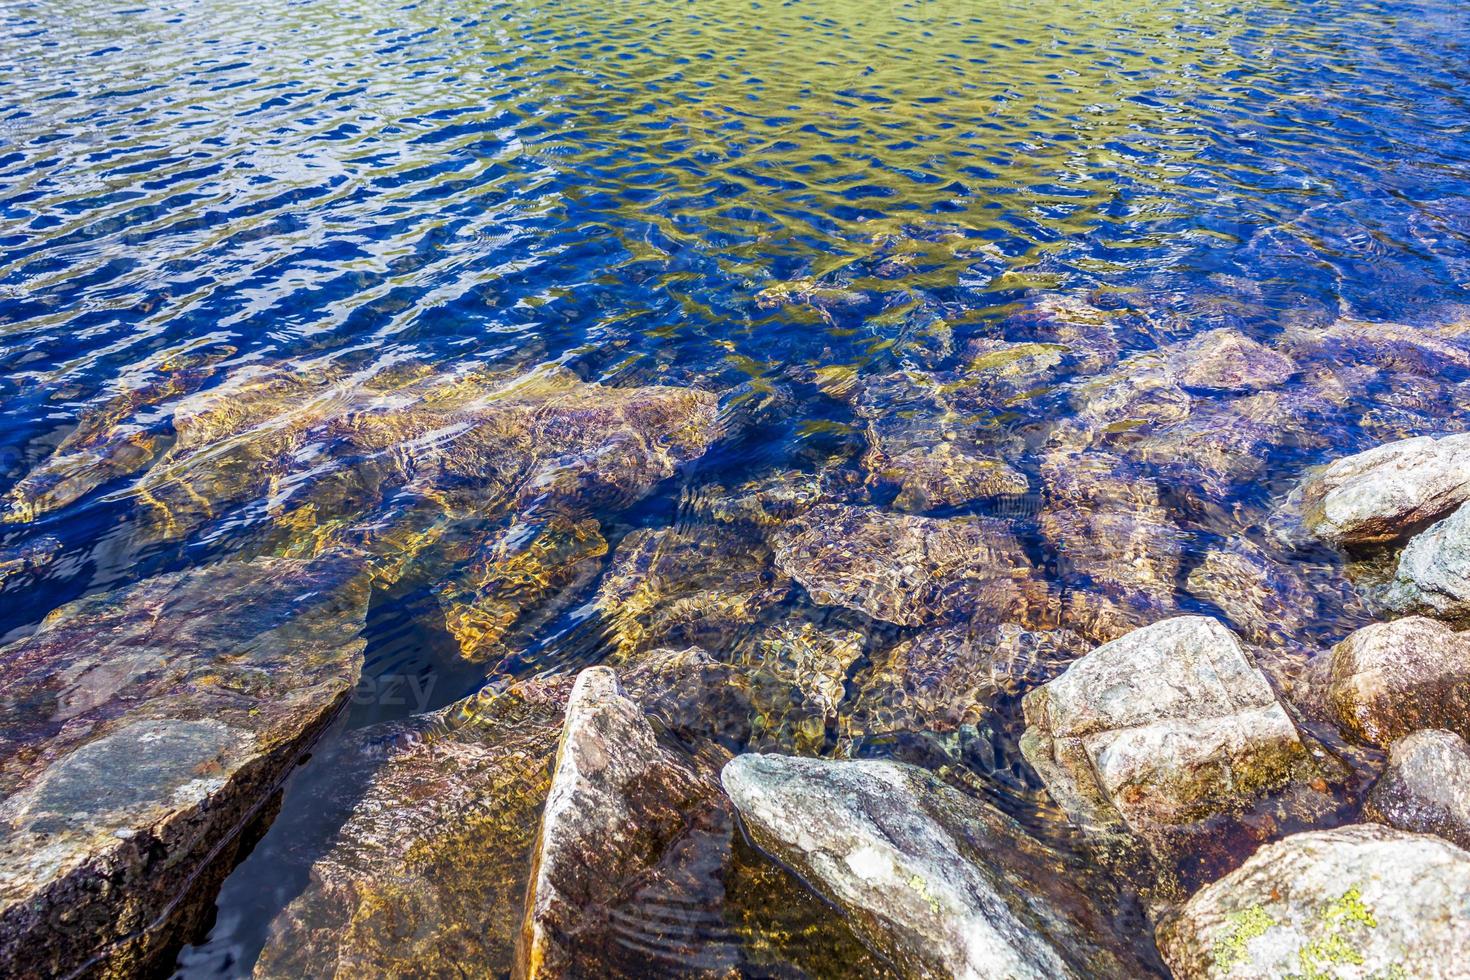 fluindo lindo rio lago com pedras e rochas de vang noruega foto